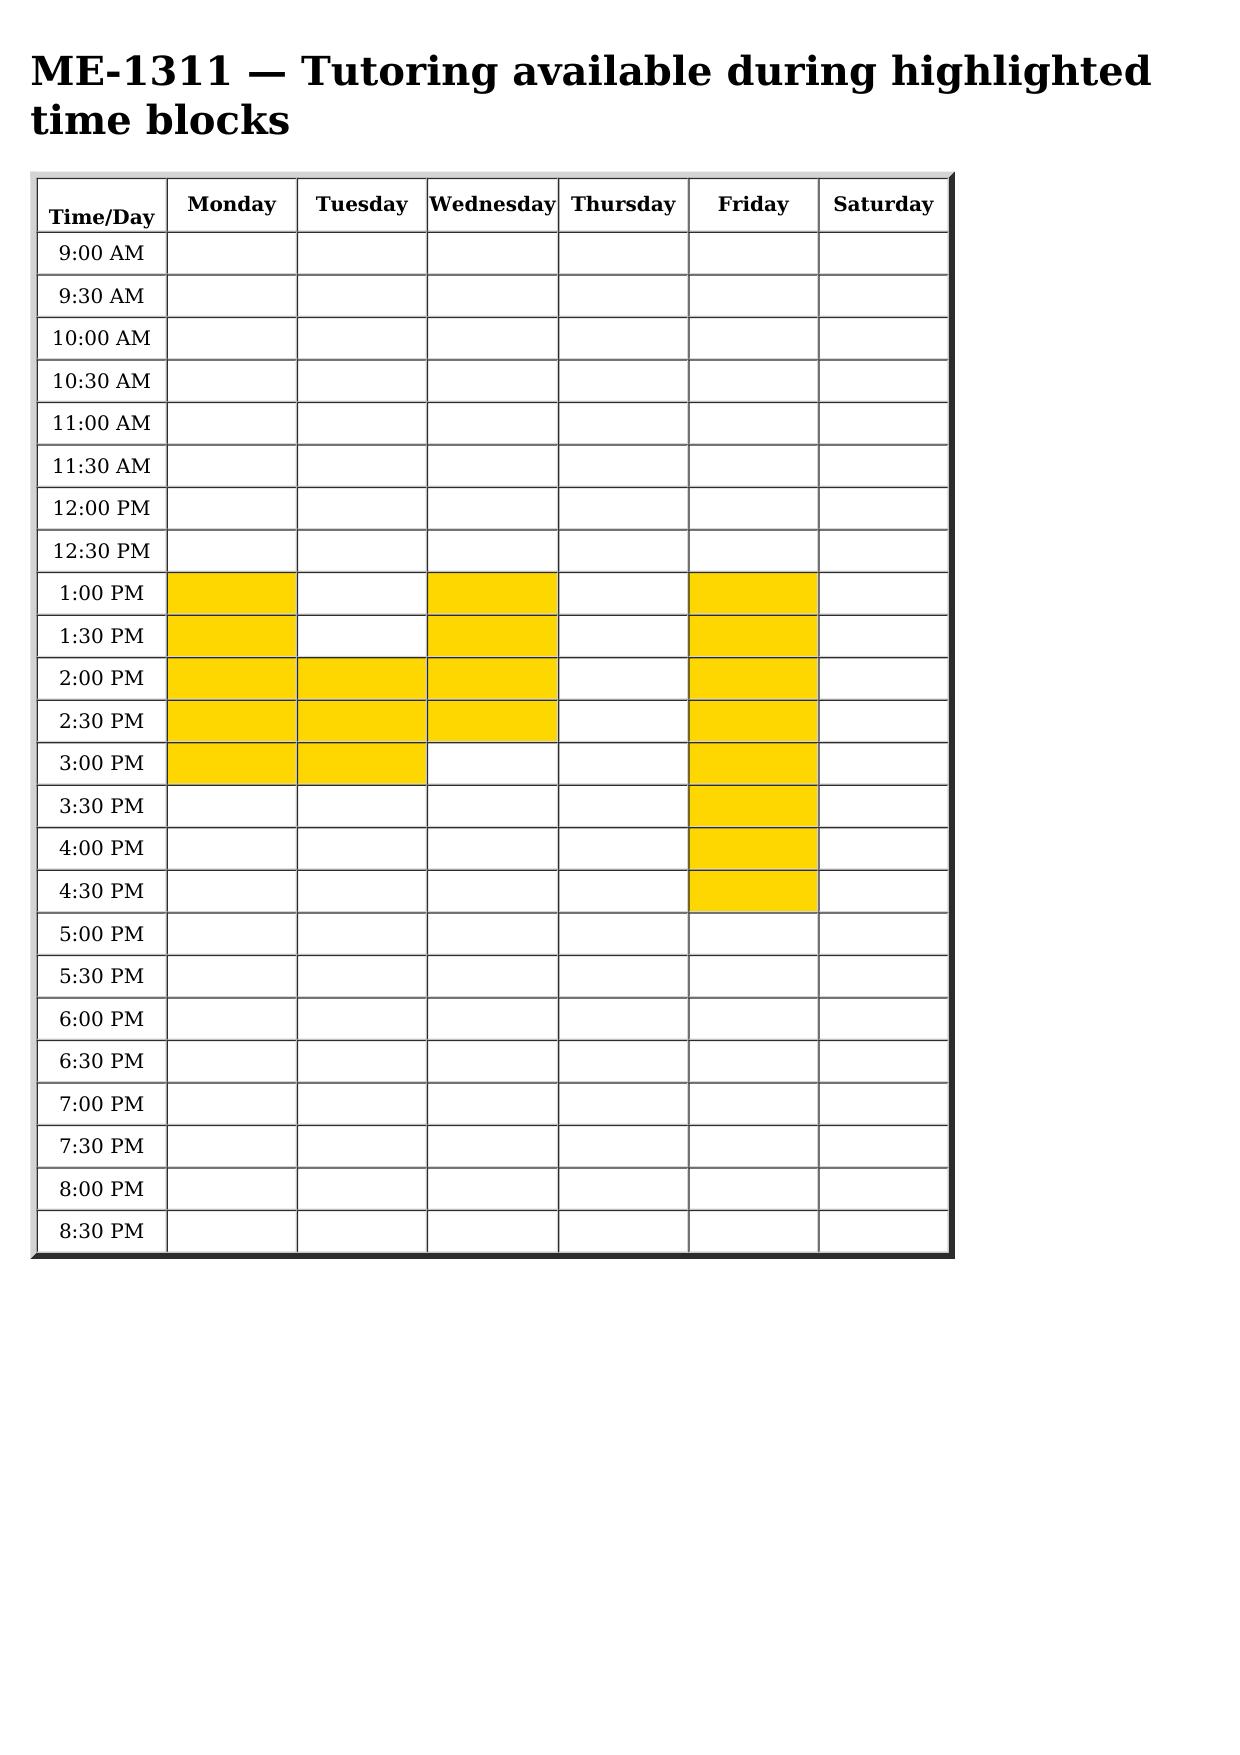 me 1311 schedule